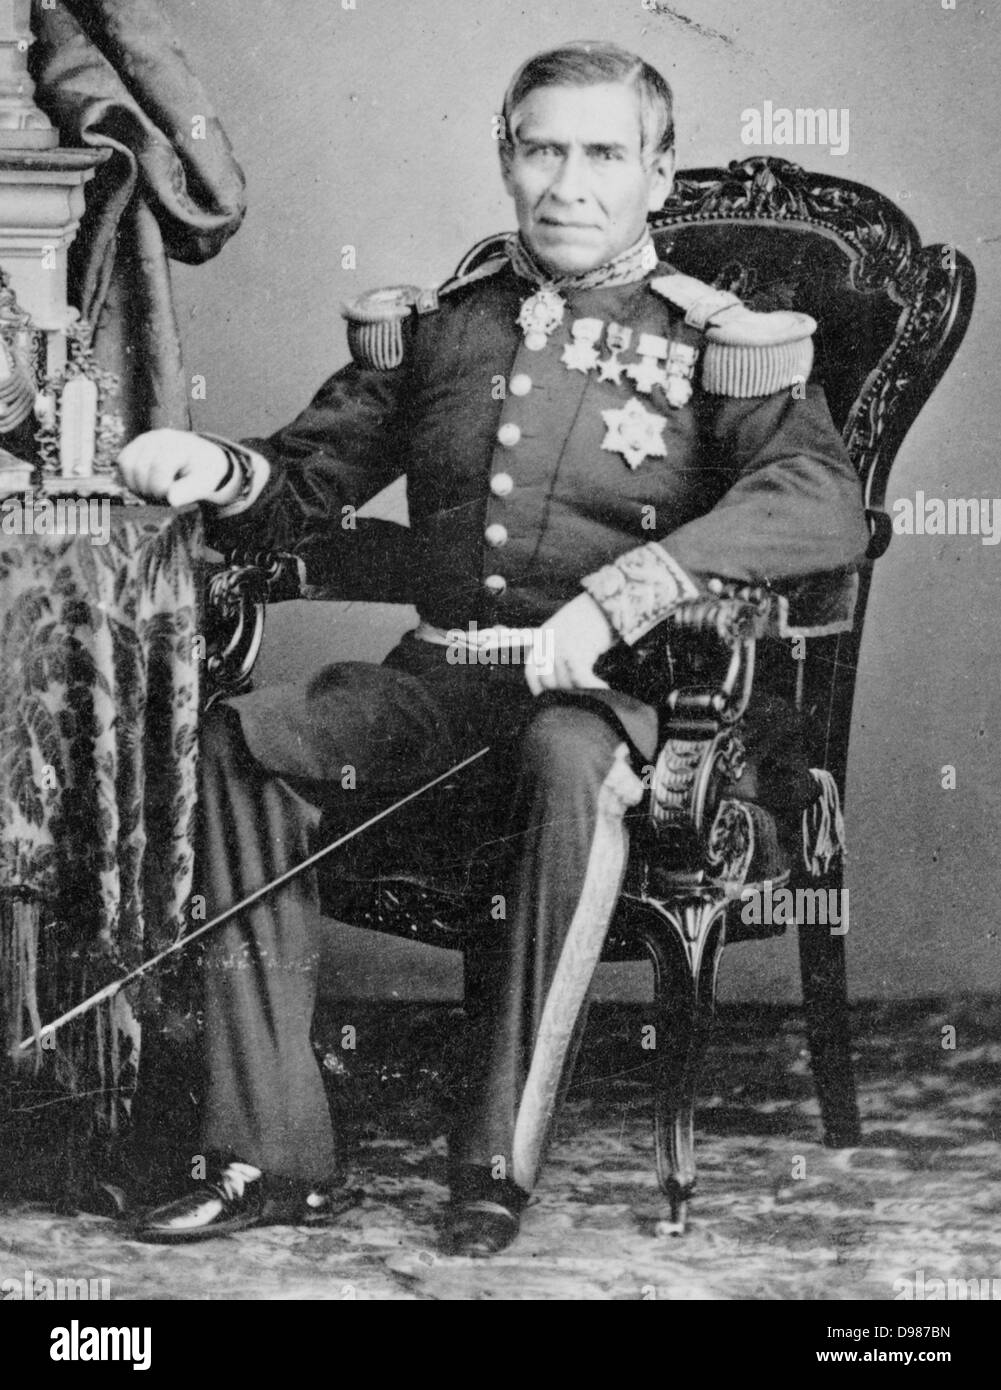 Juan Nepomuceno Almonte (15 maggio 1803 - 21 Marzo 1869) era un XIX secolo funzionario messicano, militare e diplomatico. Egli era un veterano della battaglia di Alamo durante la rivoluzione del Texas. Almonte era anche un leader del Messico di Conservatori del 1860 e servito come regent Foto Stock